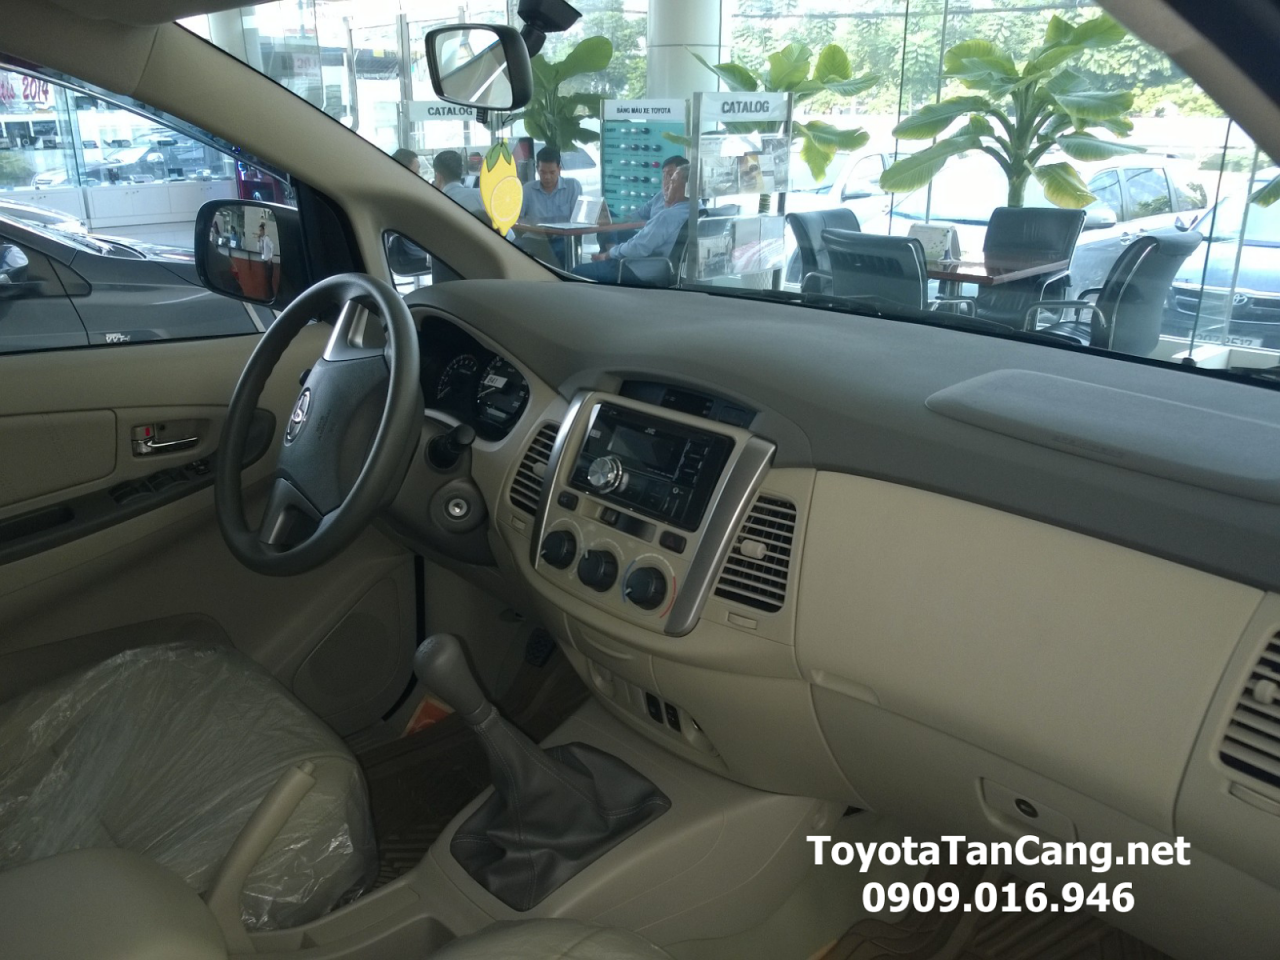 Đánh giá có nên mua Toyota Innova 2.0E số sàn không?